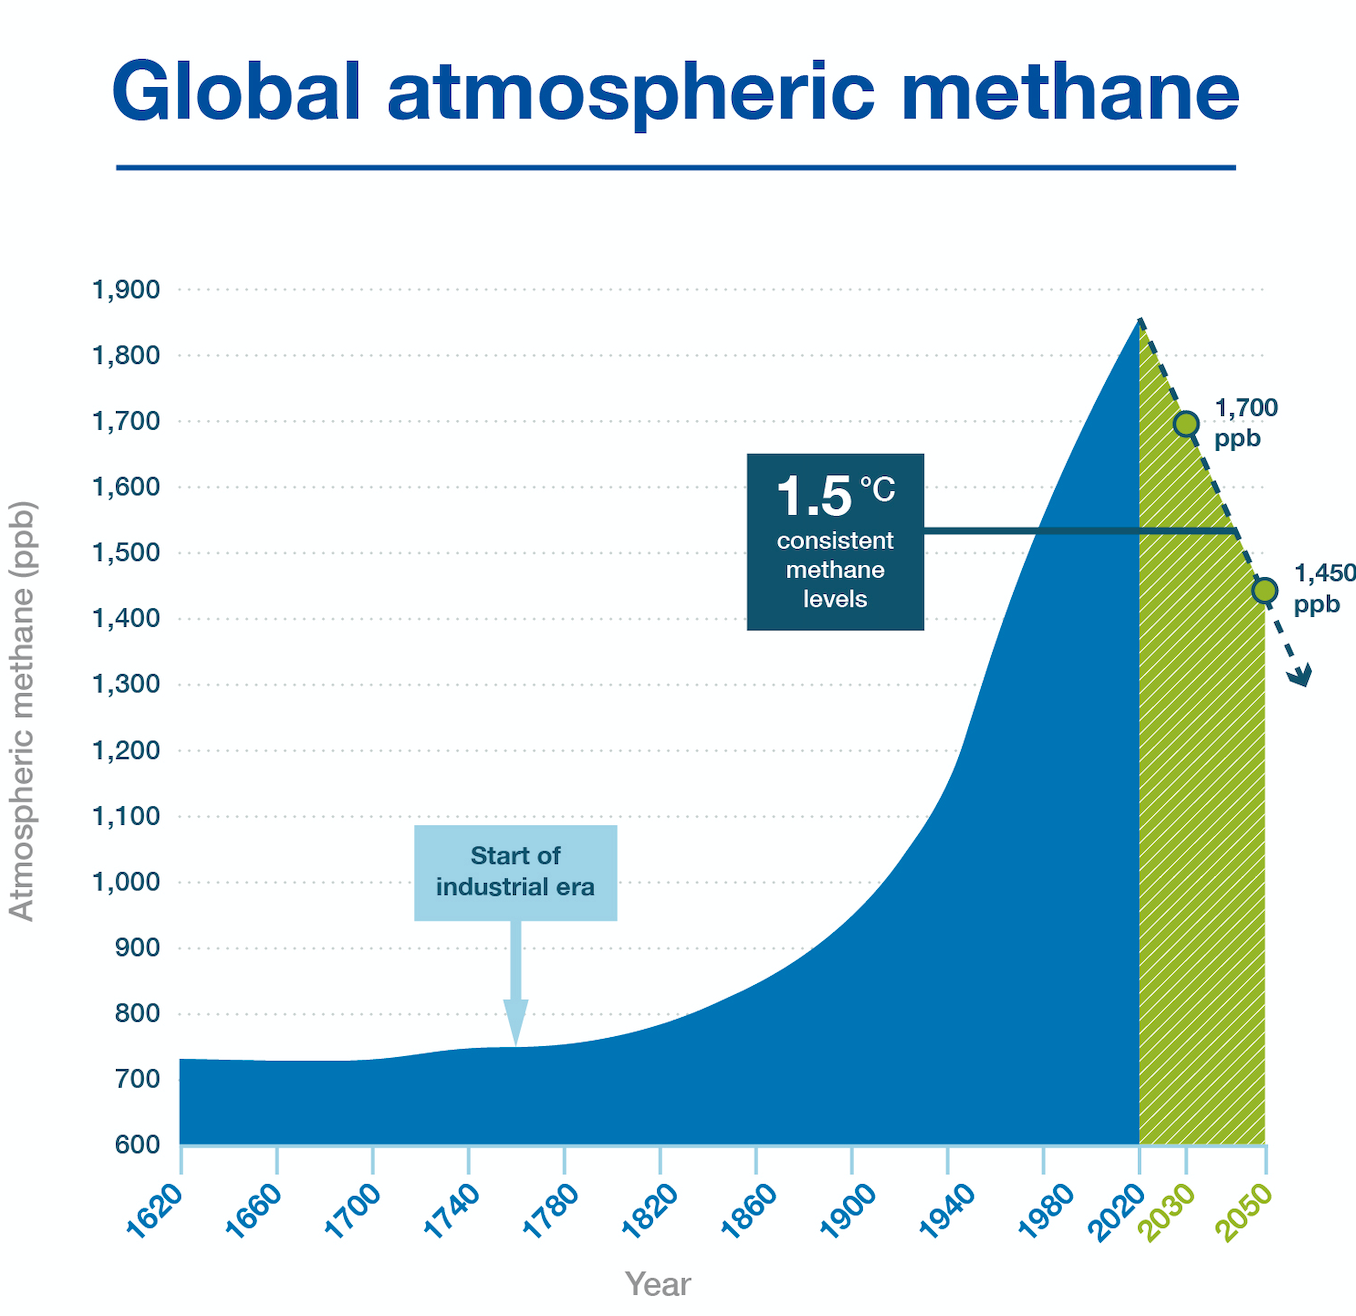 Halten av metangas i atmosfären har ökat kraftigt, men måste nu ner.